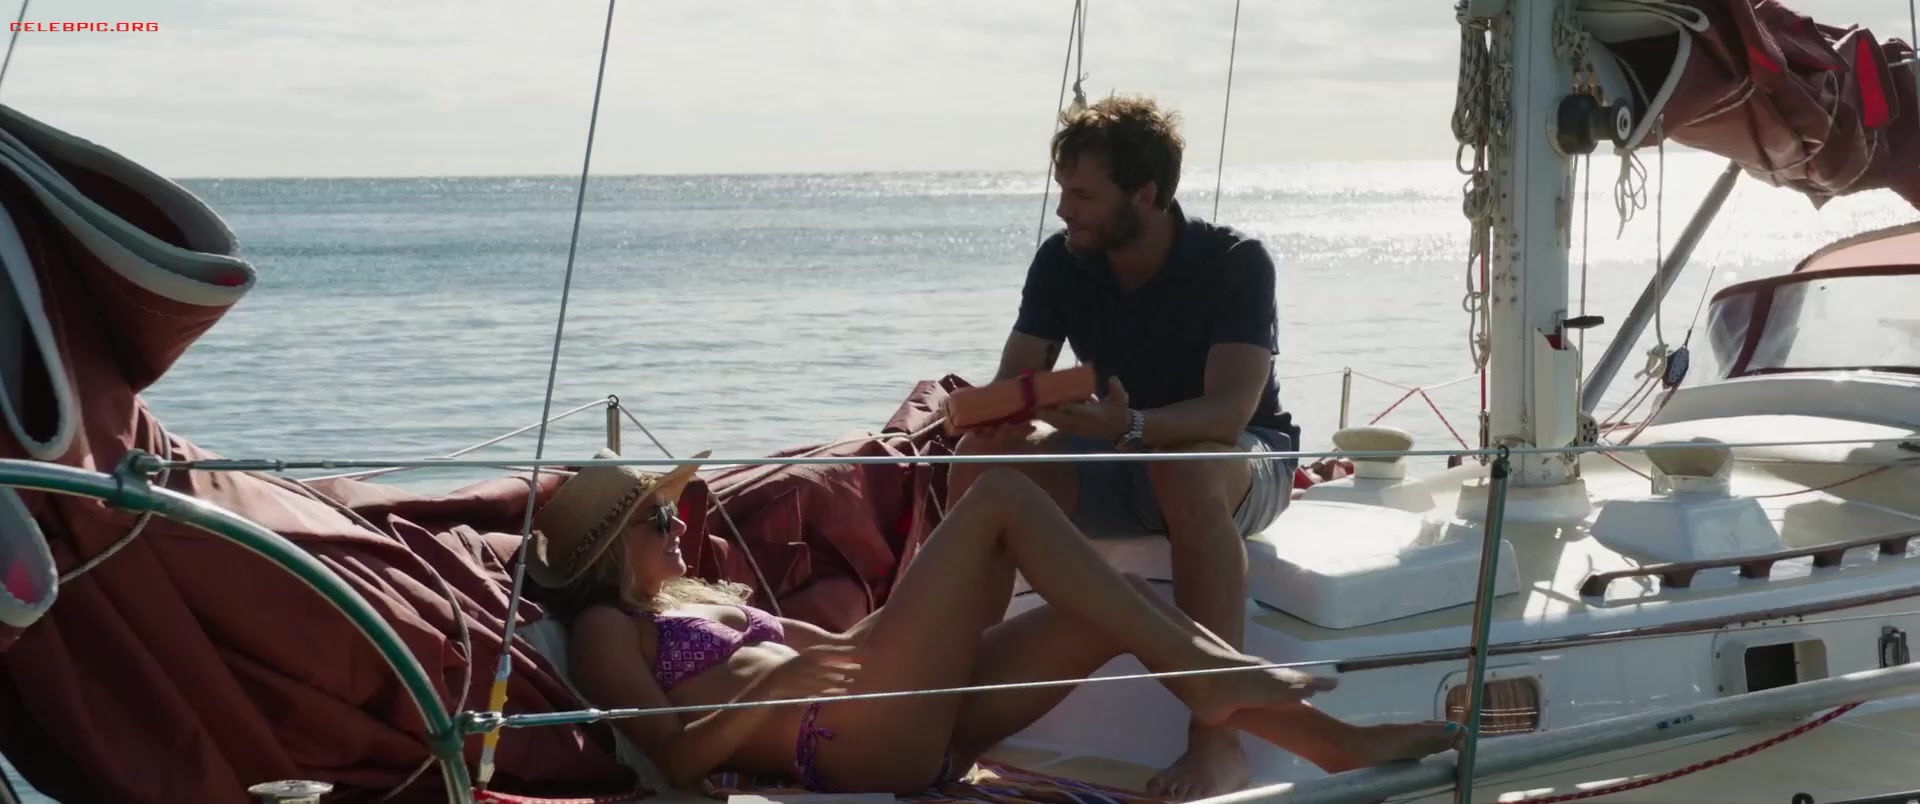 Shailene Woodley - Adrift 1080p (1) 0745.jpg